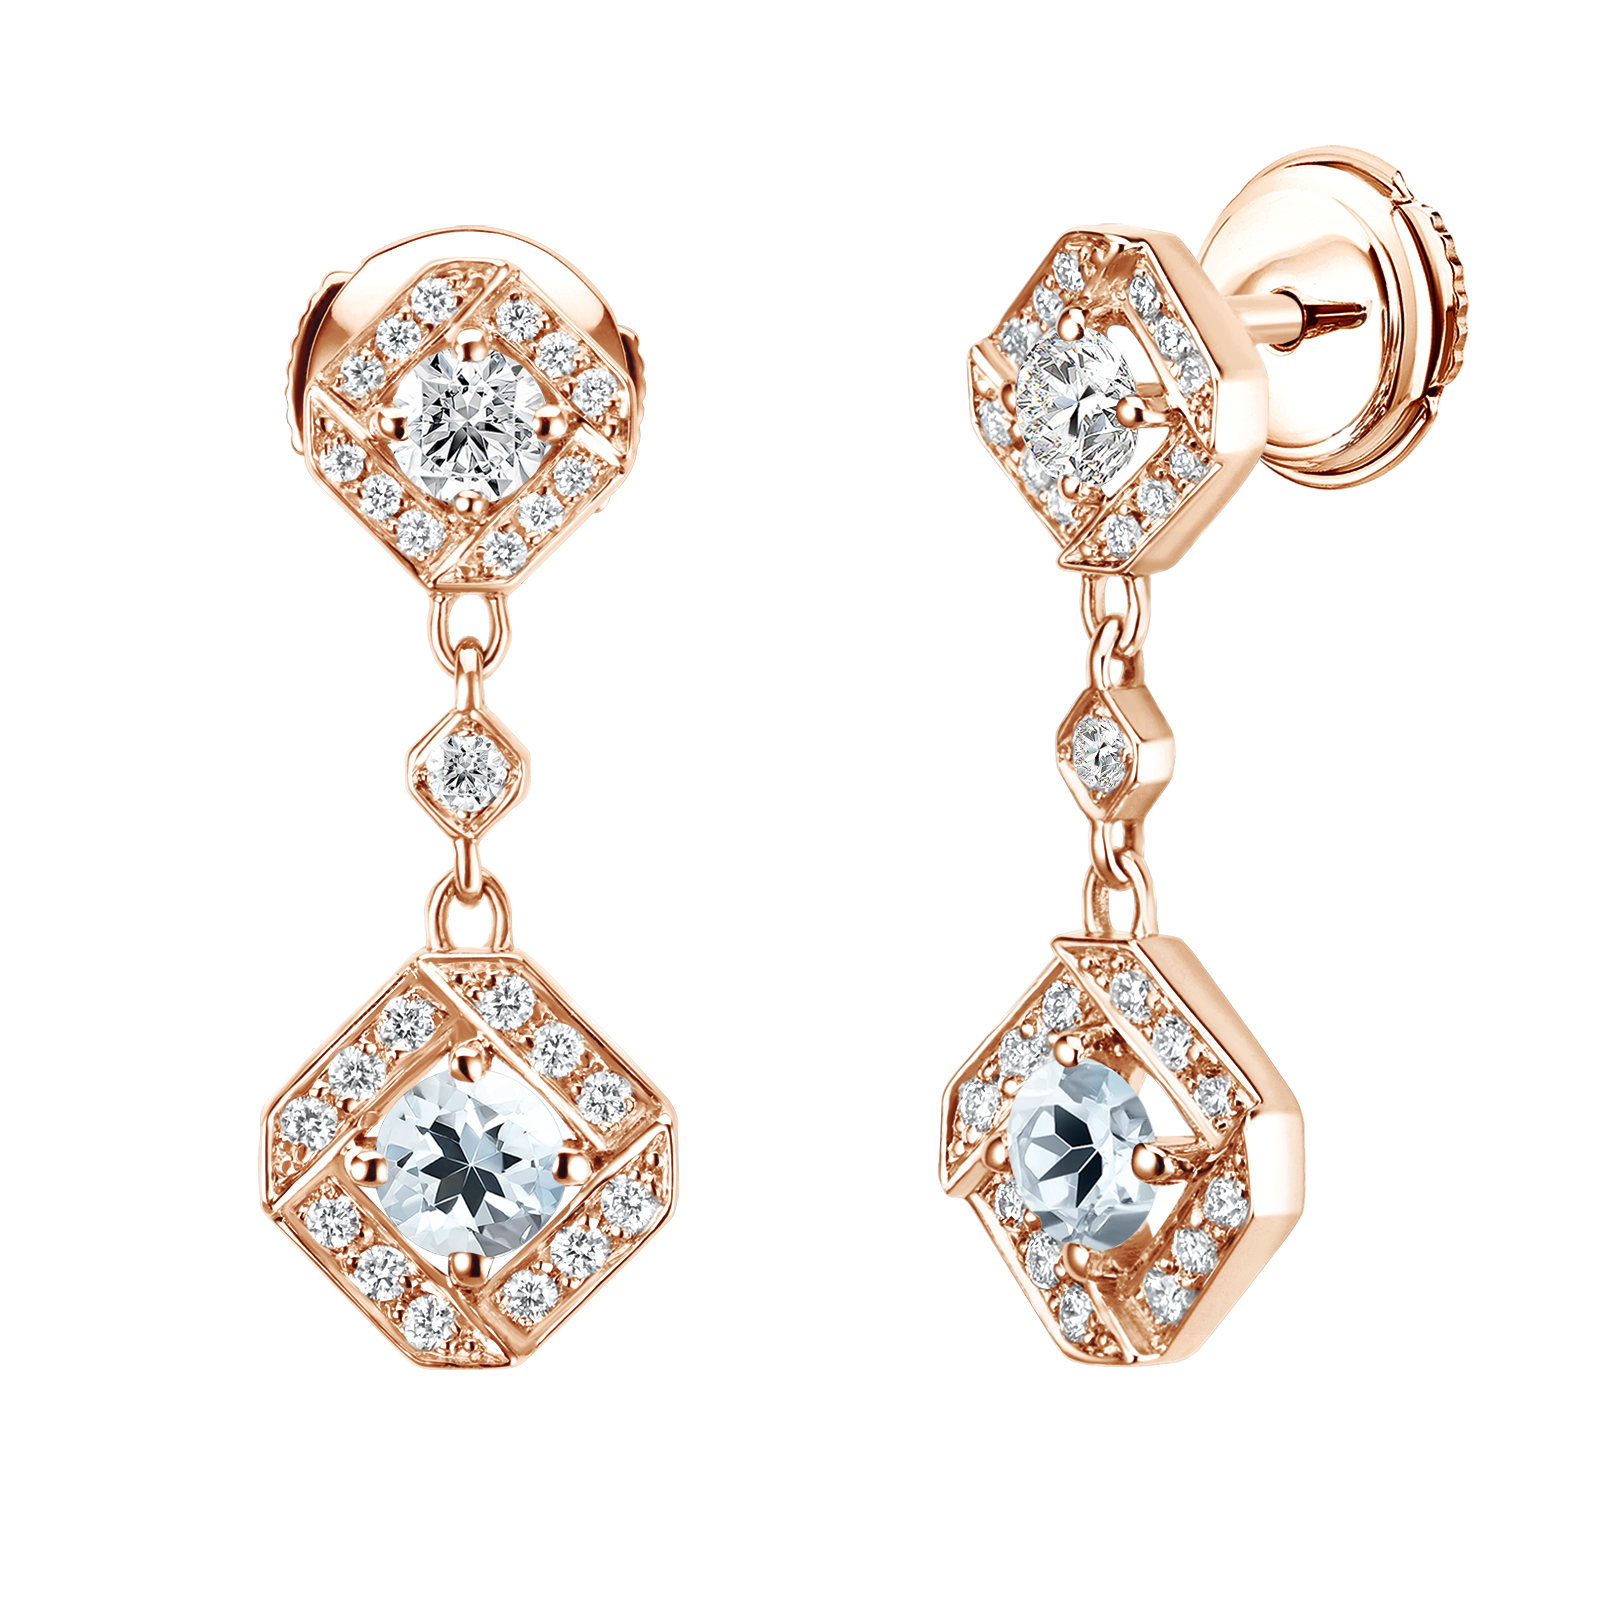 Boucles d'oreilles Or rose Aigue-marine et diamants Plissage 1